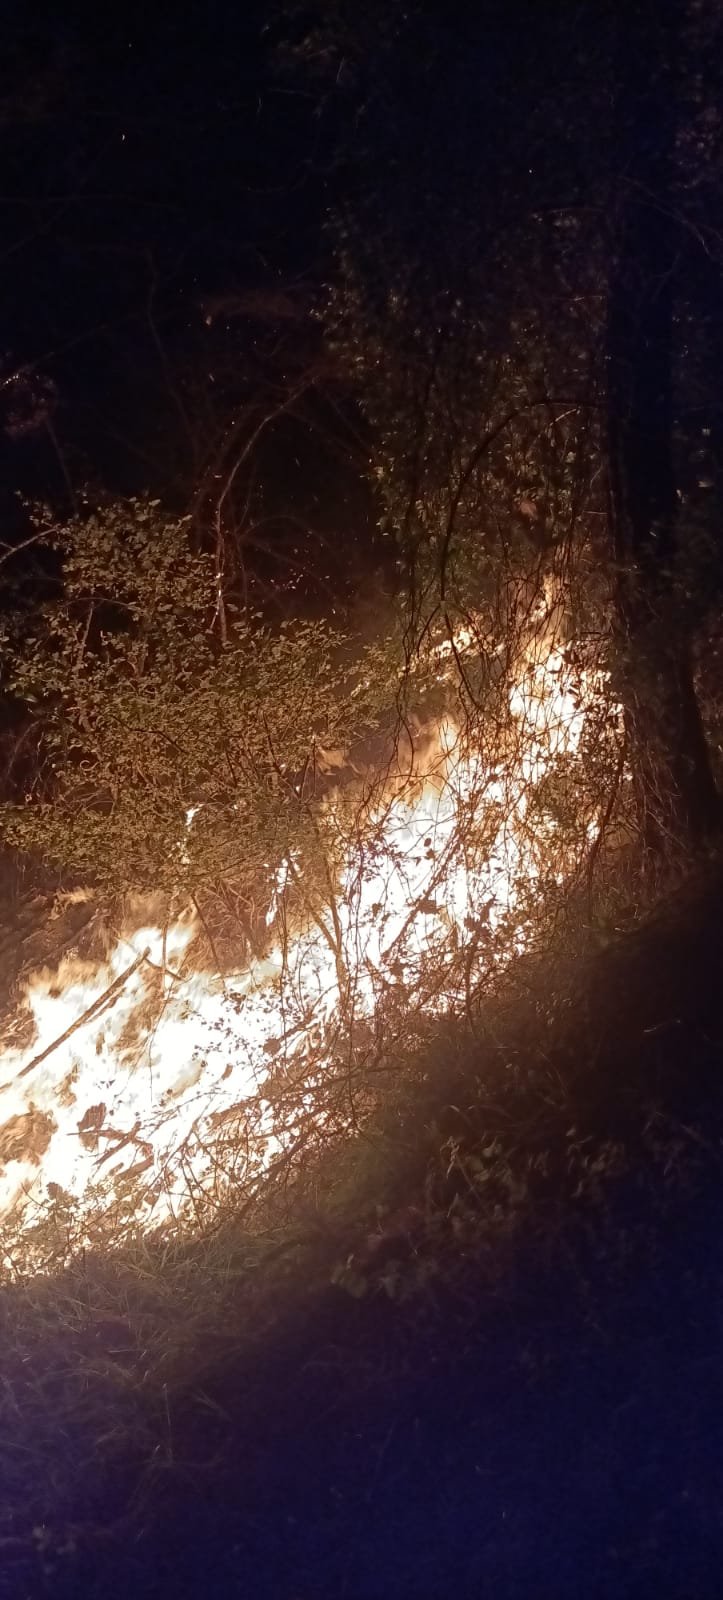 6 noktada çıkan orman yangını kontrol altına alındı